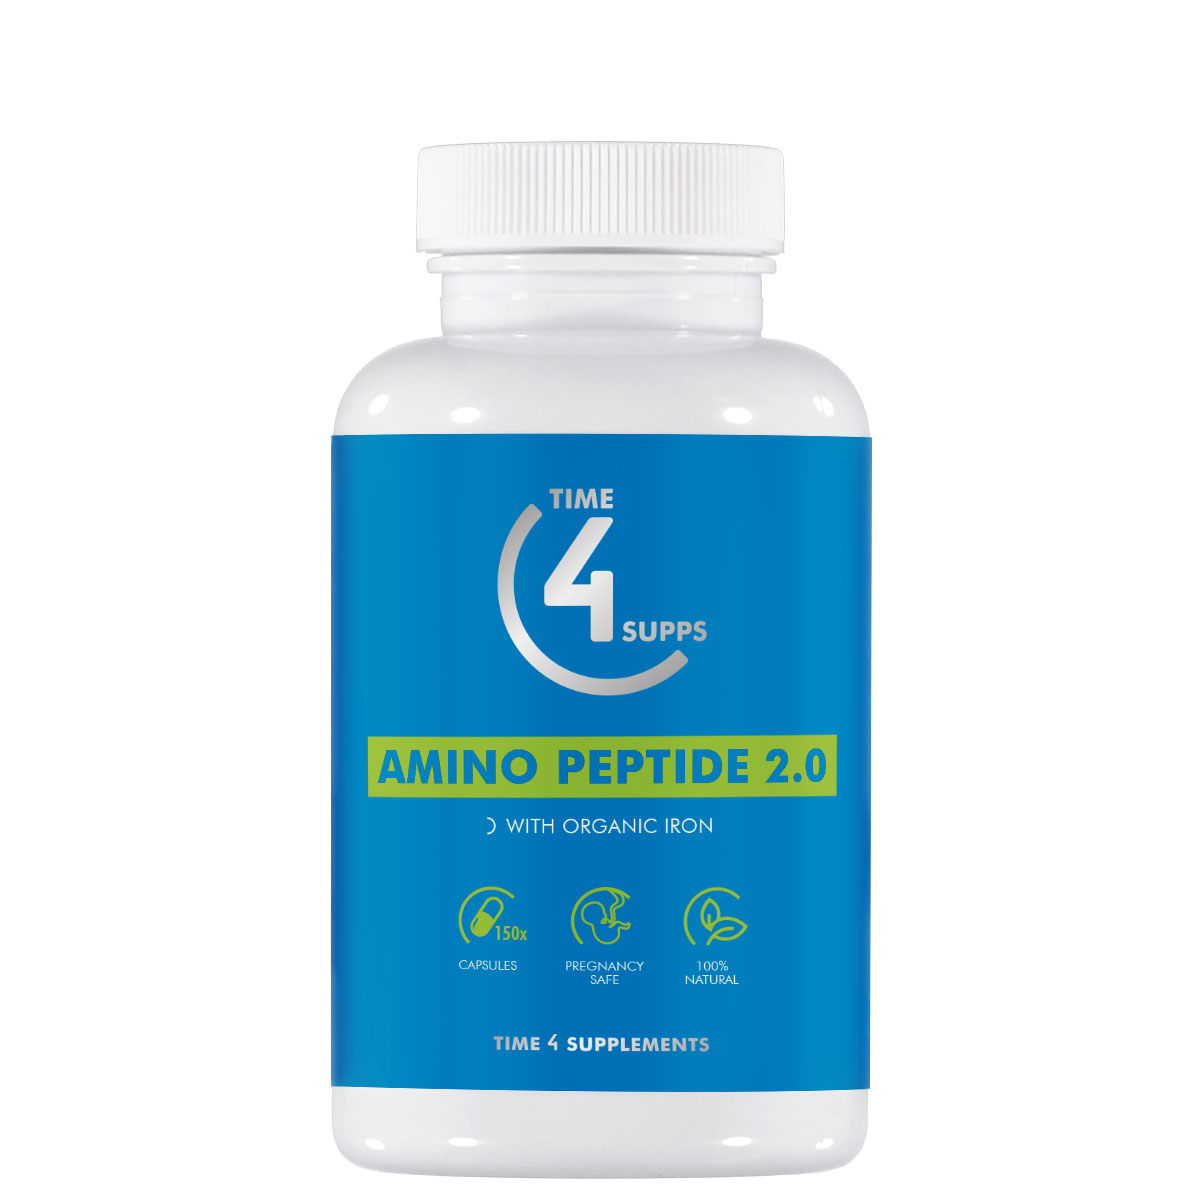 Amino Peptide 2.0